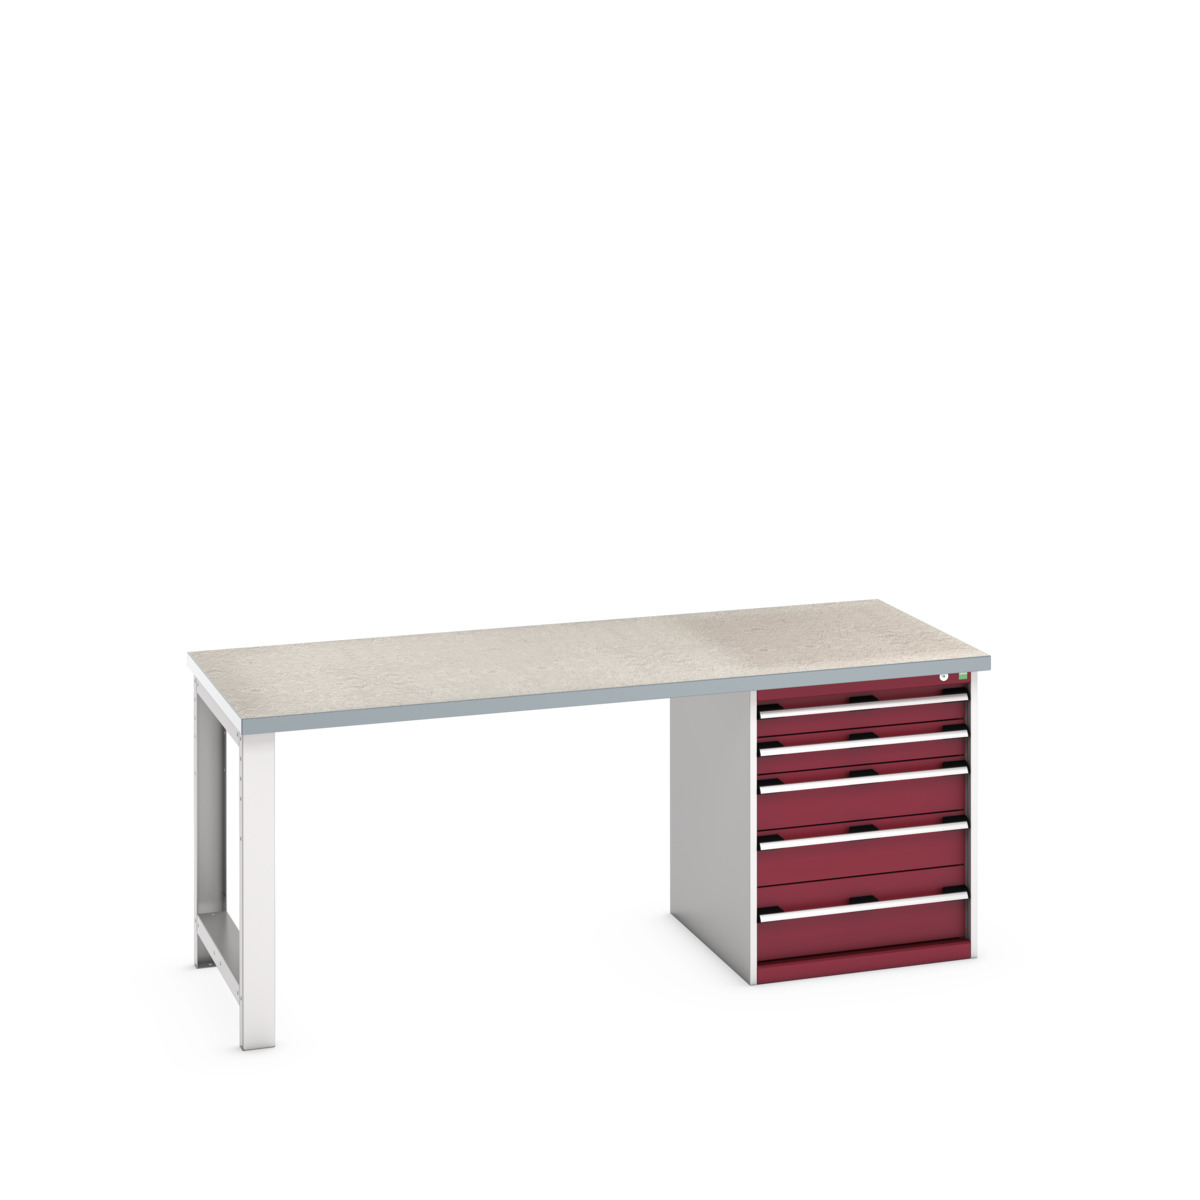 41004112.24V - cubio pedestal bench (lino)